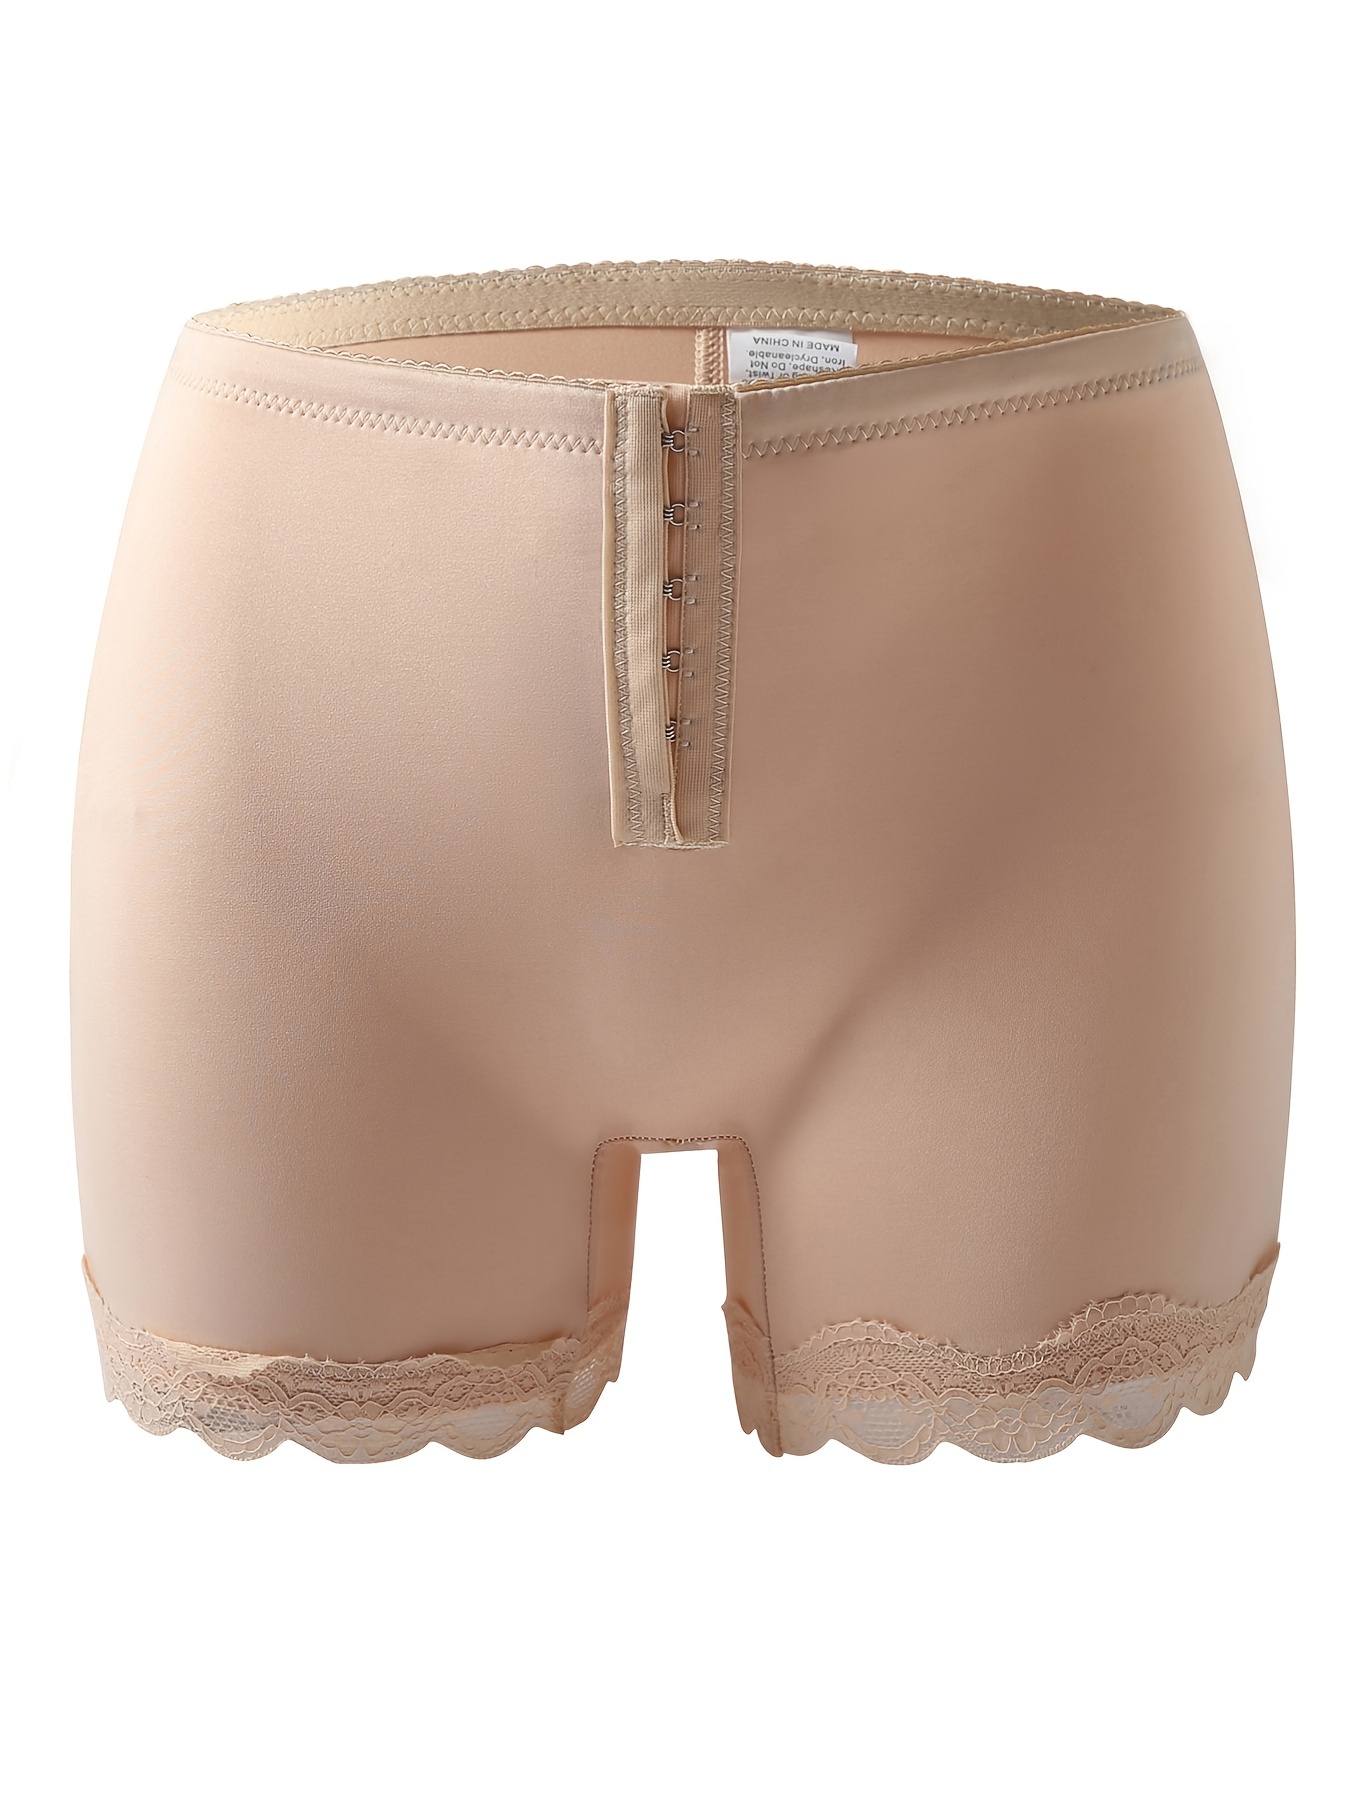 Butt Lifter Shaper Panties Shorts Butt Lift Underwear Briefs Women